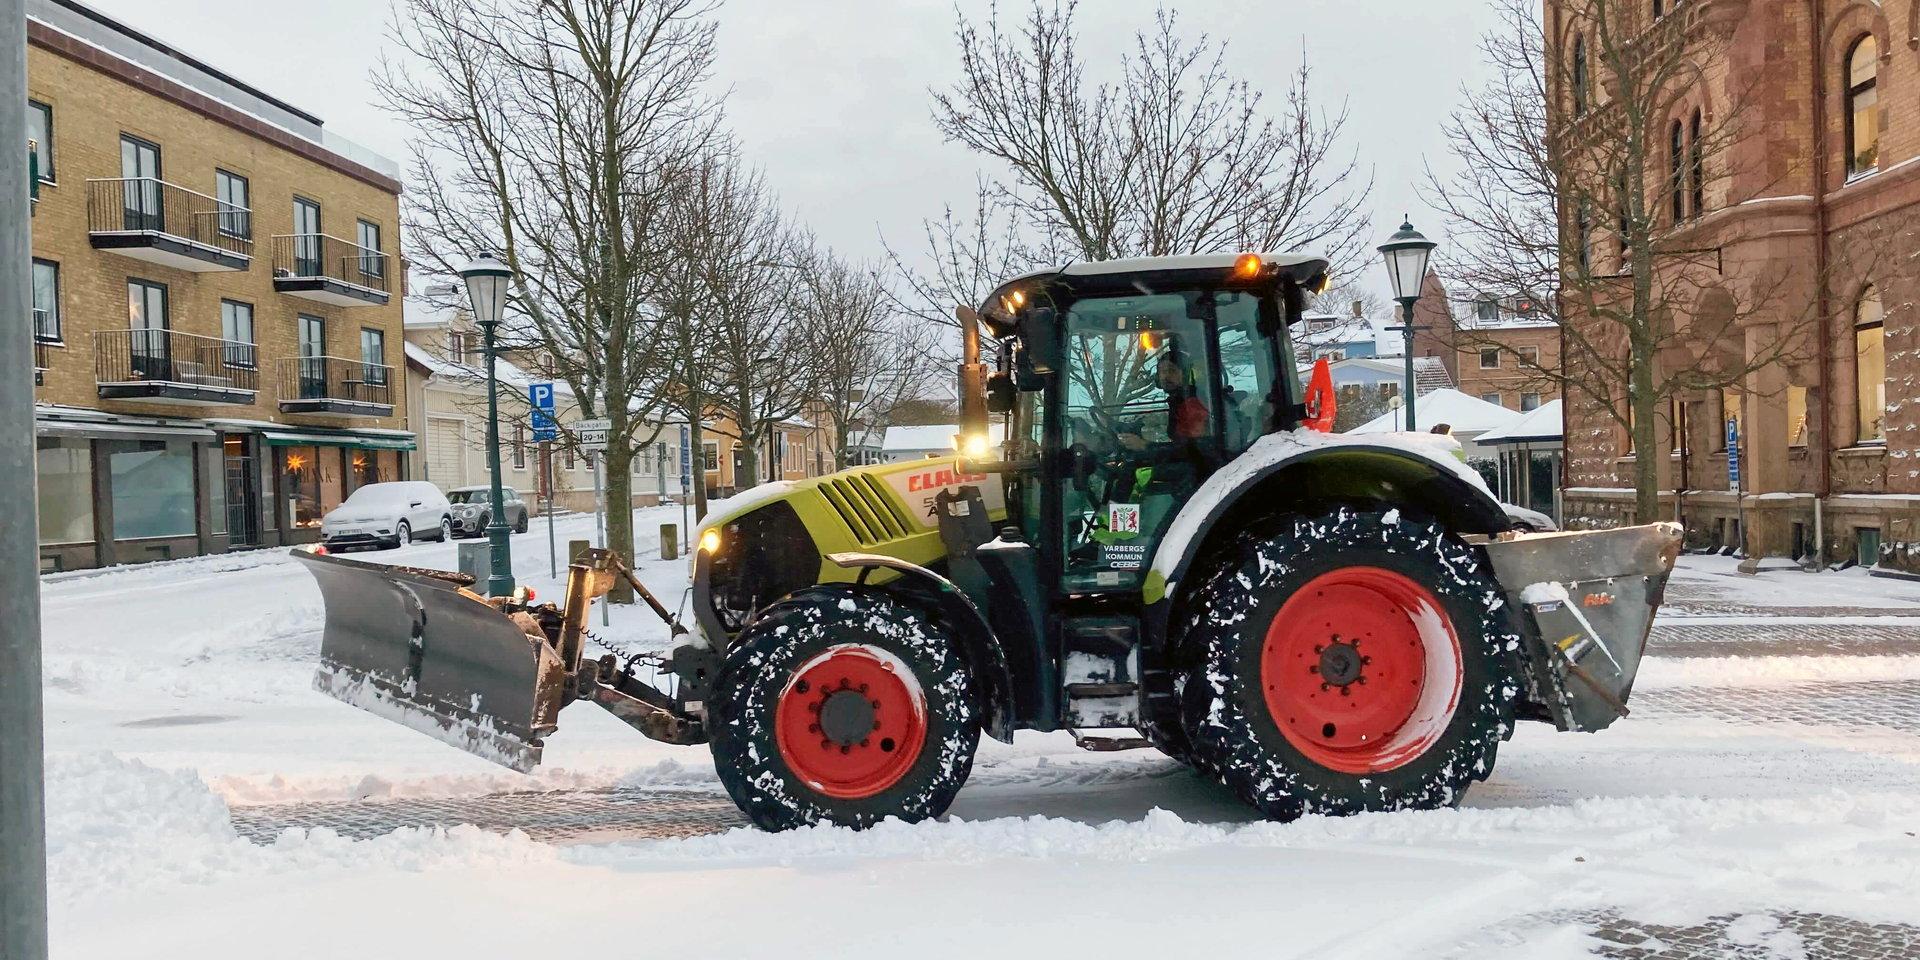 För de delar som kommunen ansvarar för har snöröjningsinsatserna varit omfattande men mängden snö i kombination med smala gator har skapat problem, skriver kommunen.